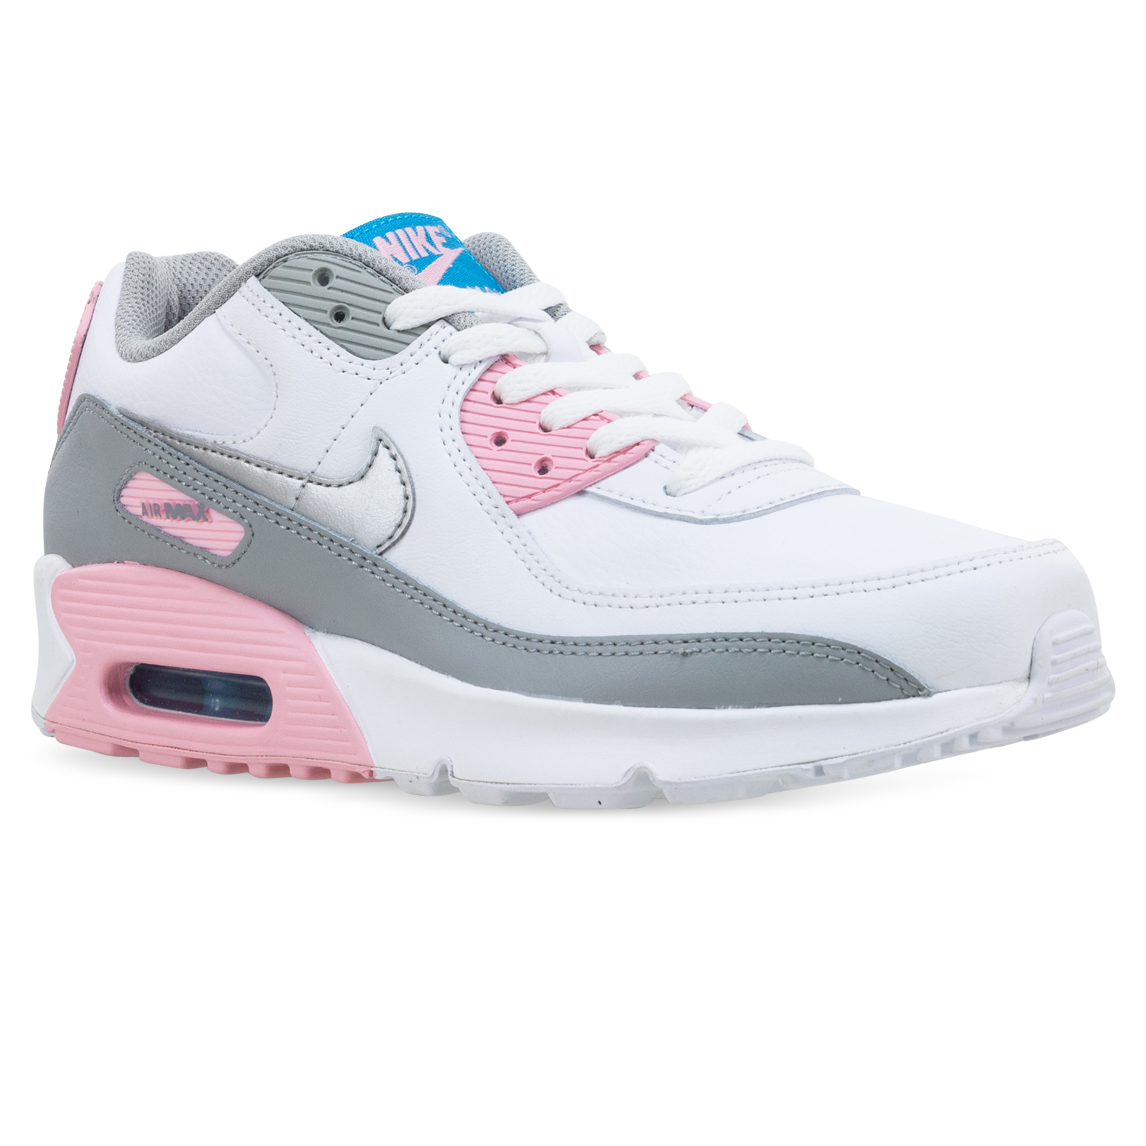 grey and pink air max 90